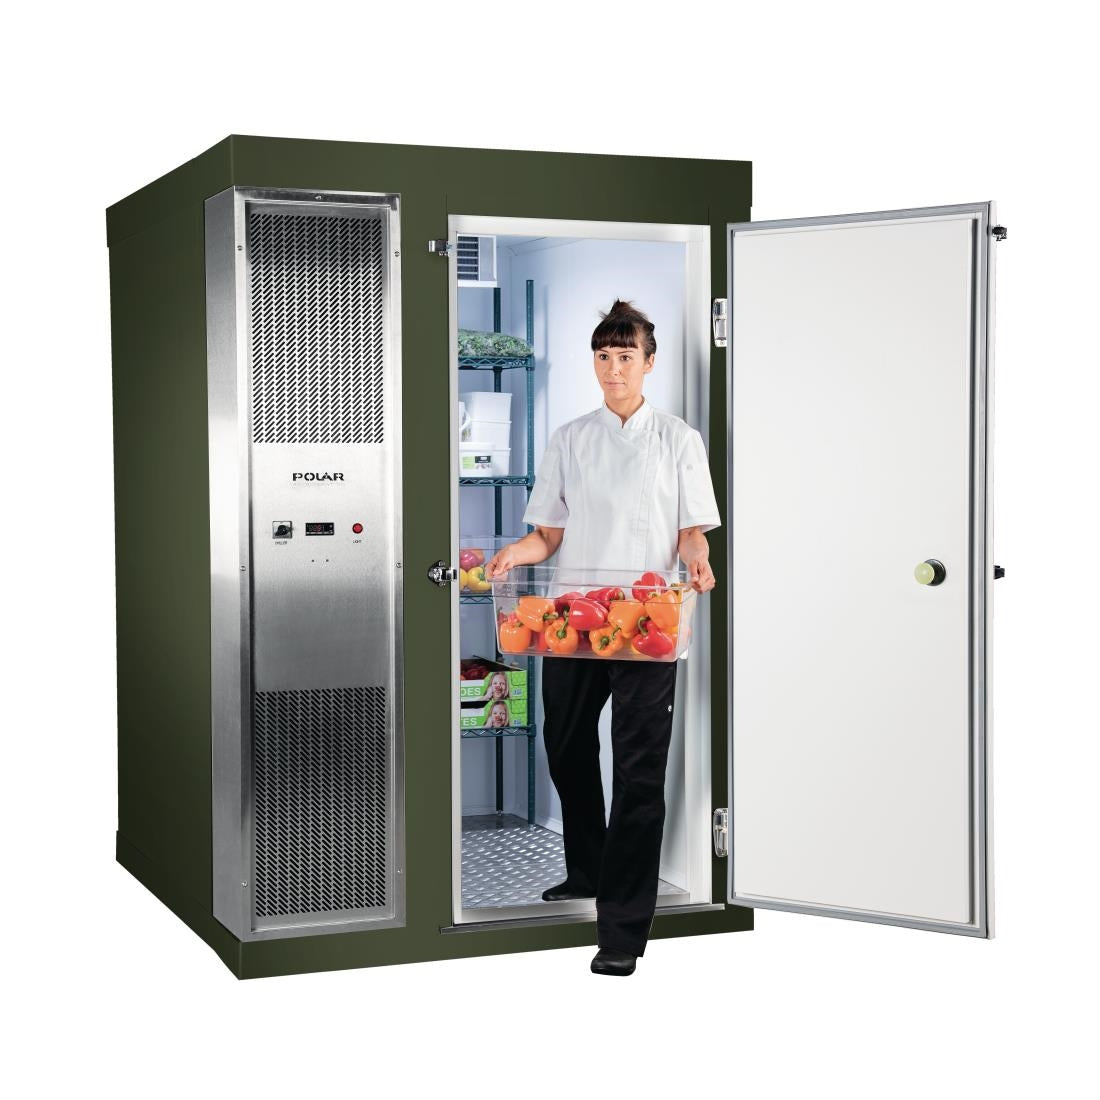 DS482-FGN Polar U-Series 1.5 x 1.8m Integral Walk In Freezer Room Green JD Catering Equipment Solutions Ltd